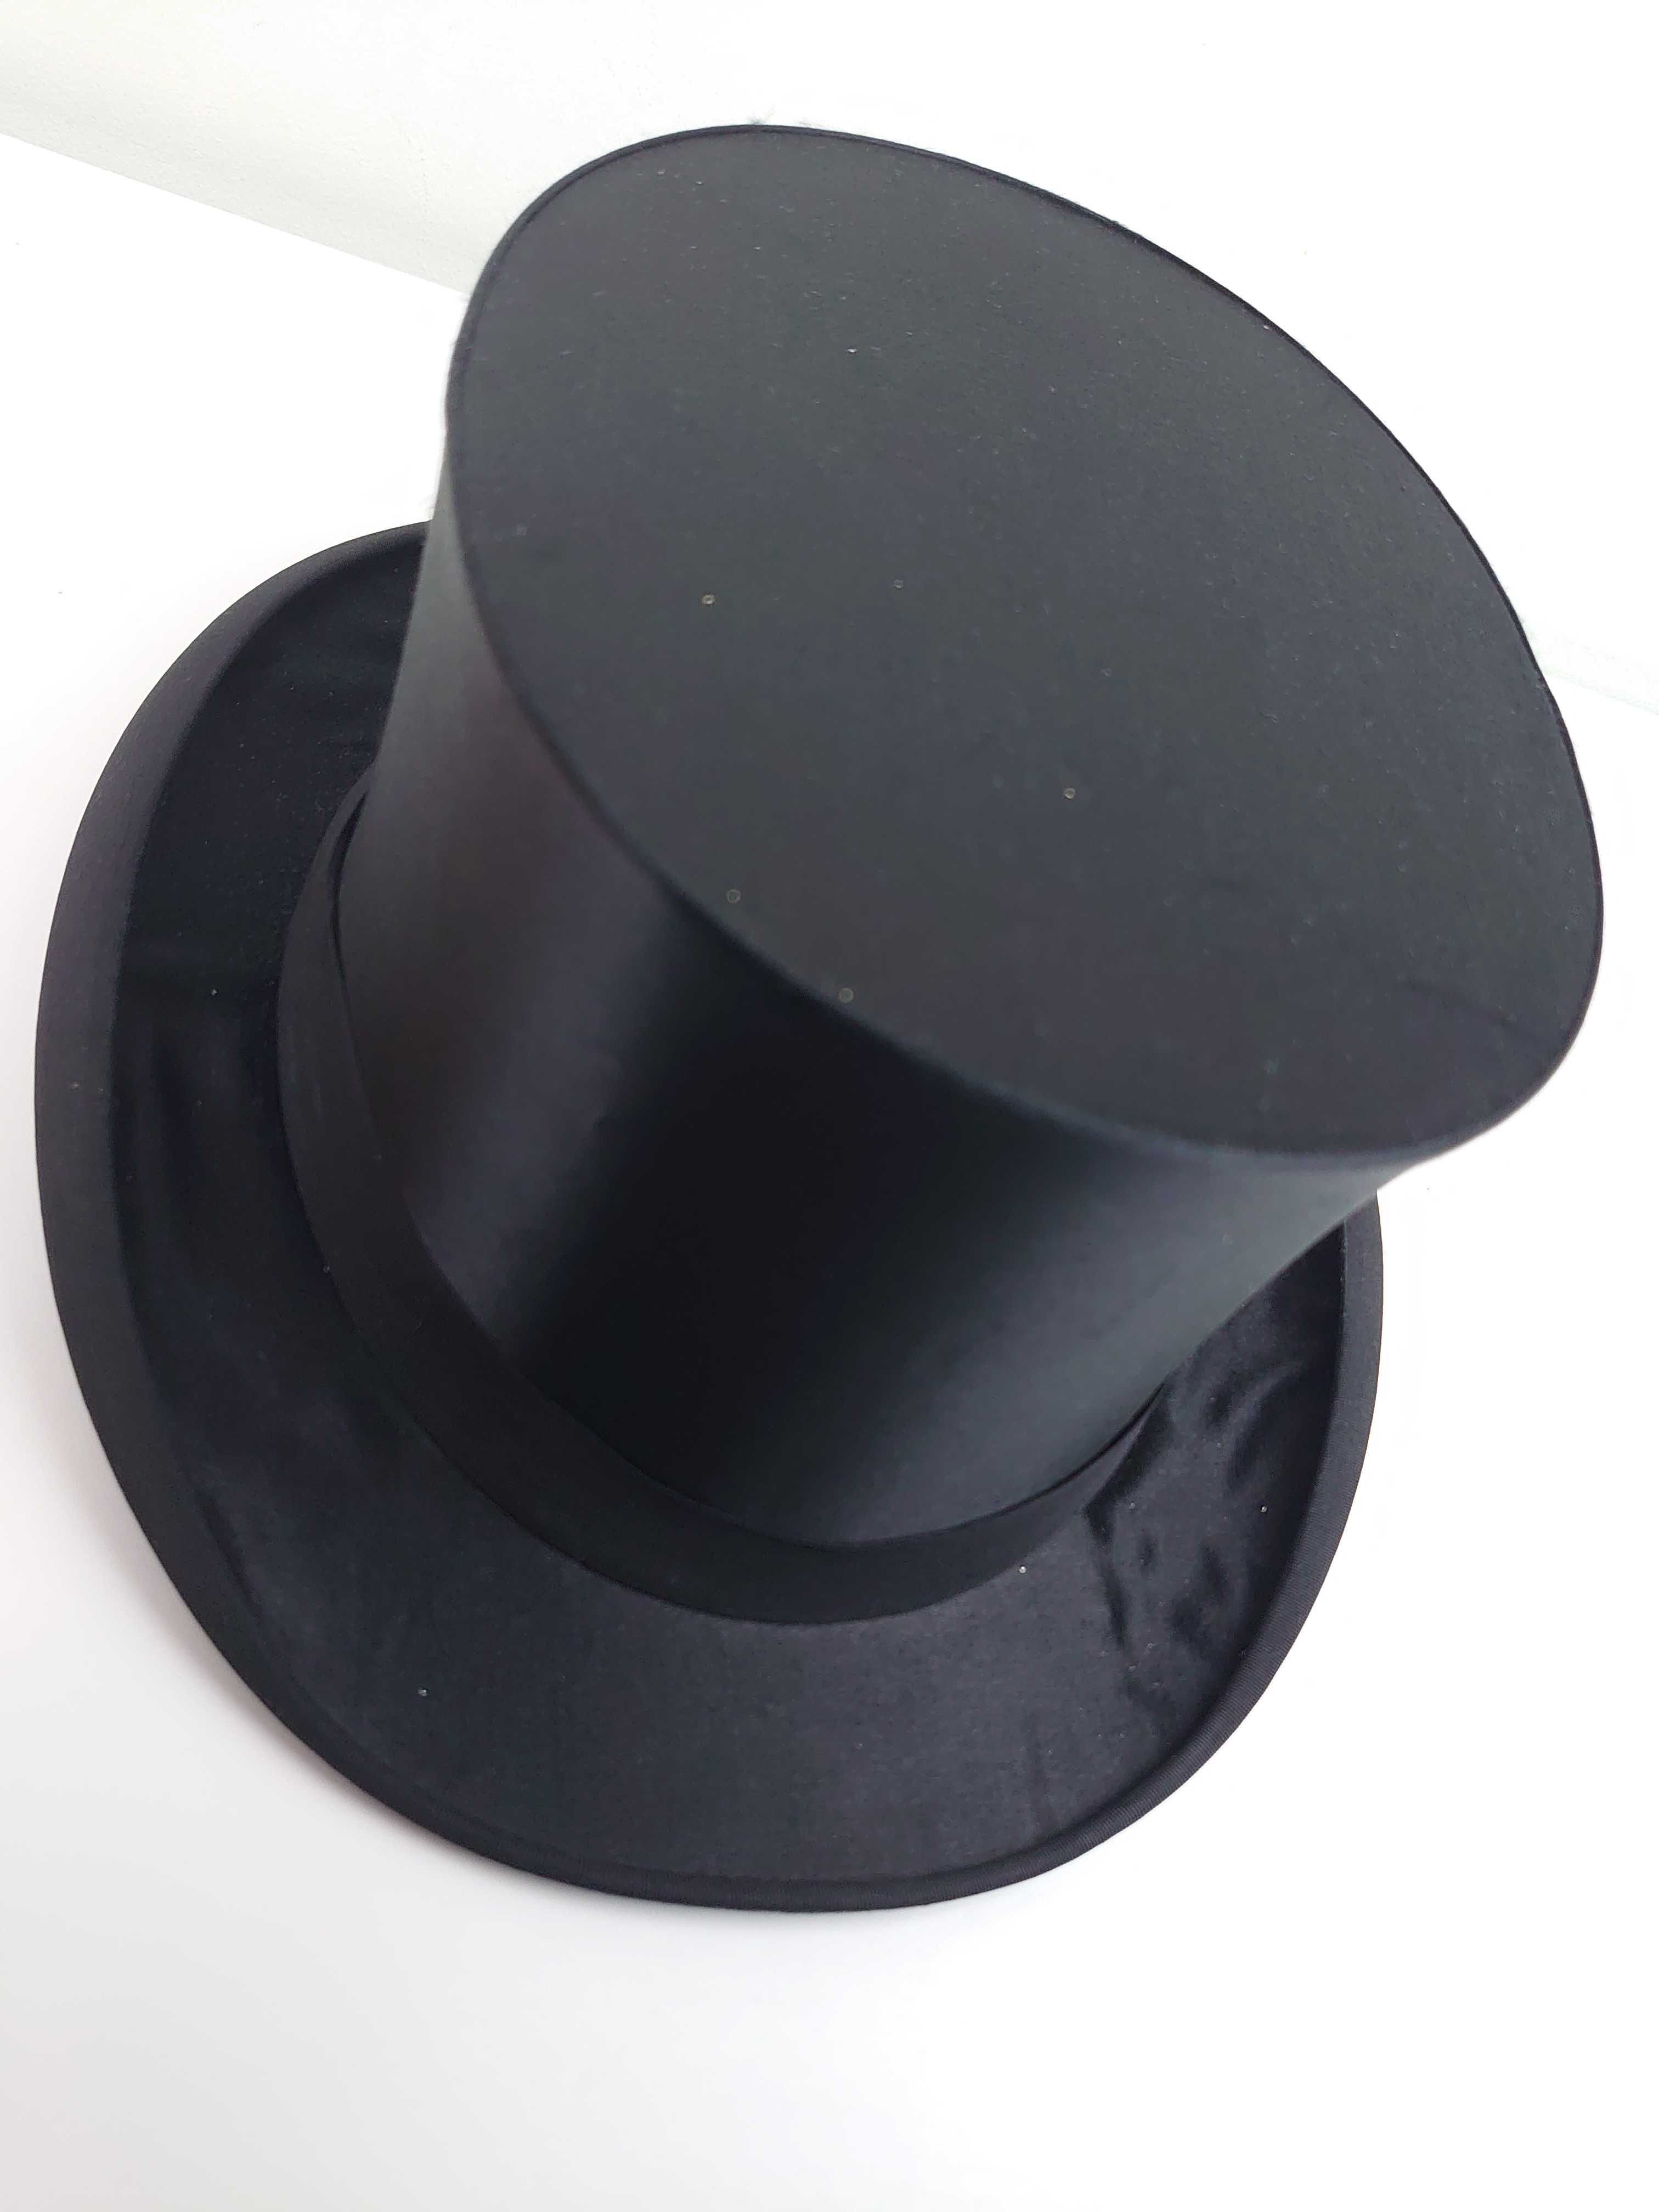 Cylinder kapelusz składany czarny Tremel Heinrich Schowe rozmiar 64